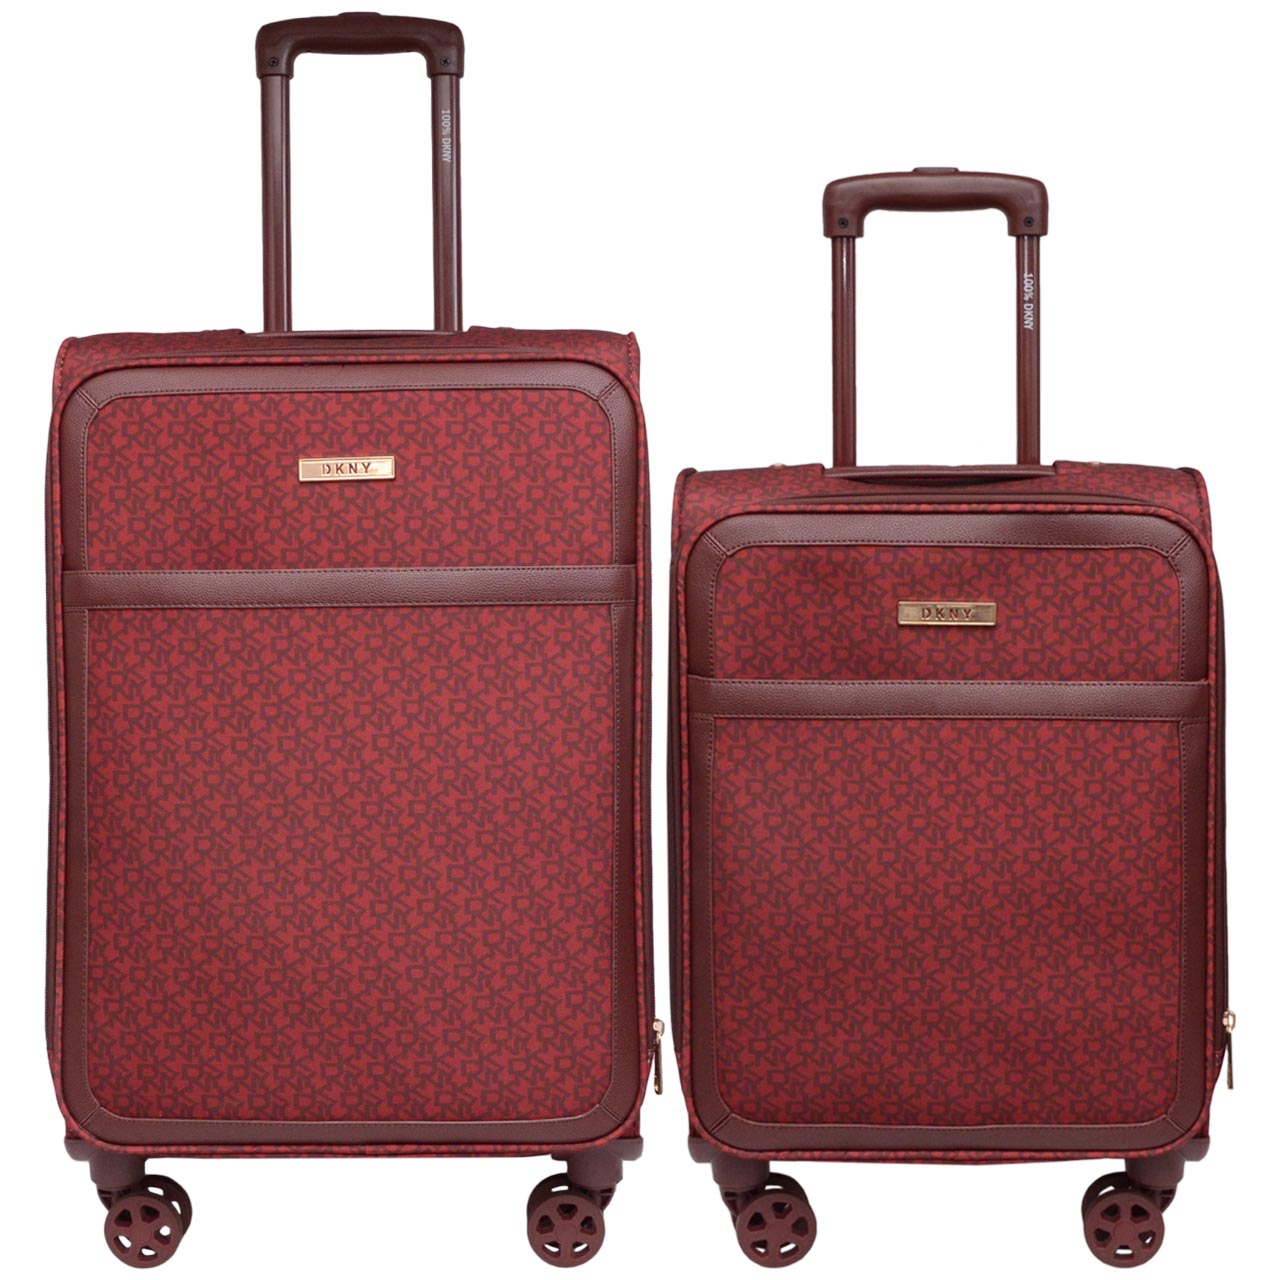 مجموعه دو عددی چمدان دی کی ان وای مدل VS9 DKNY سایز متوسط و کوچک